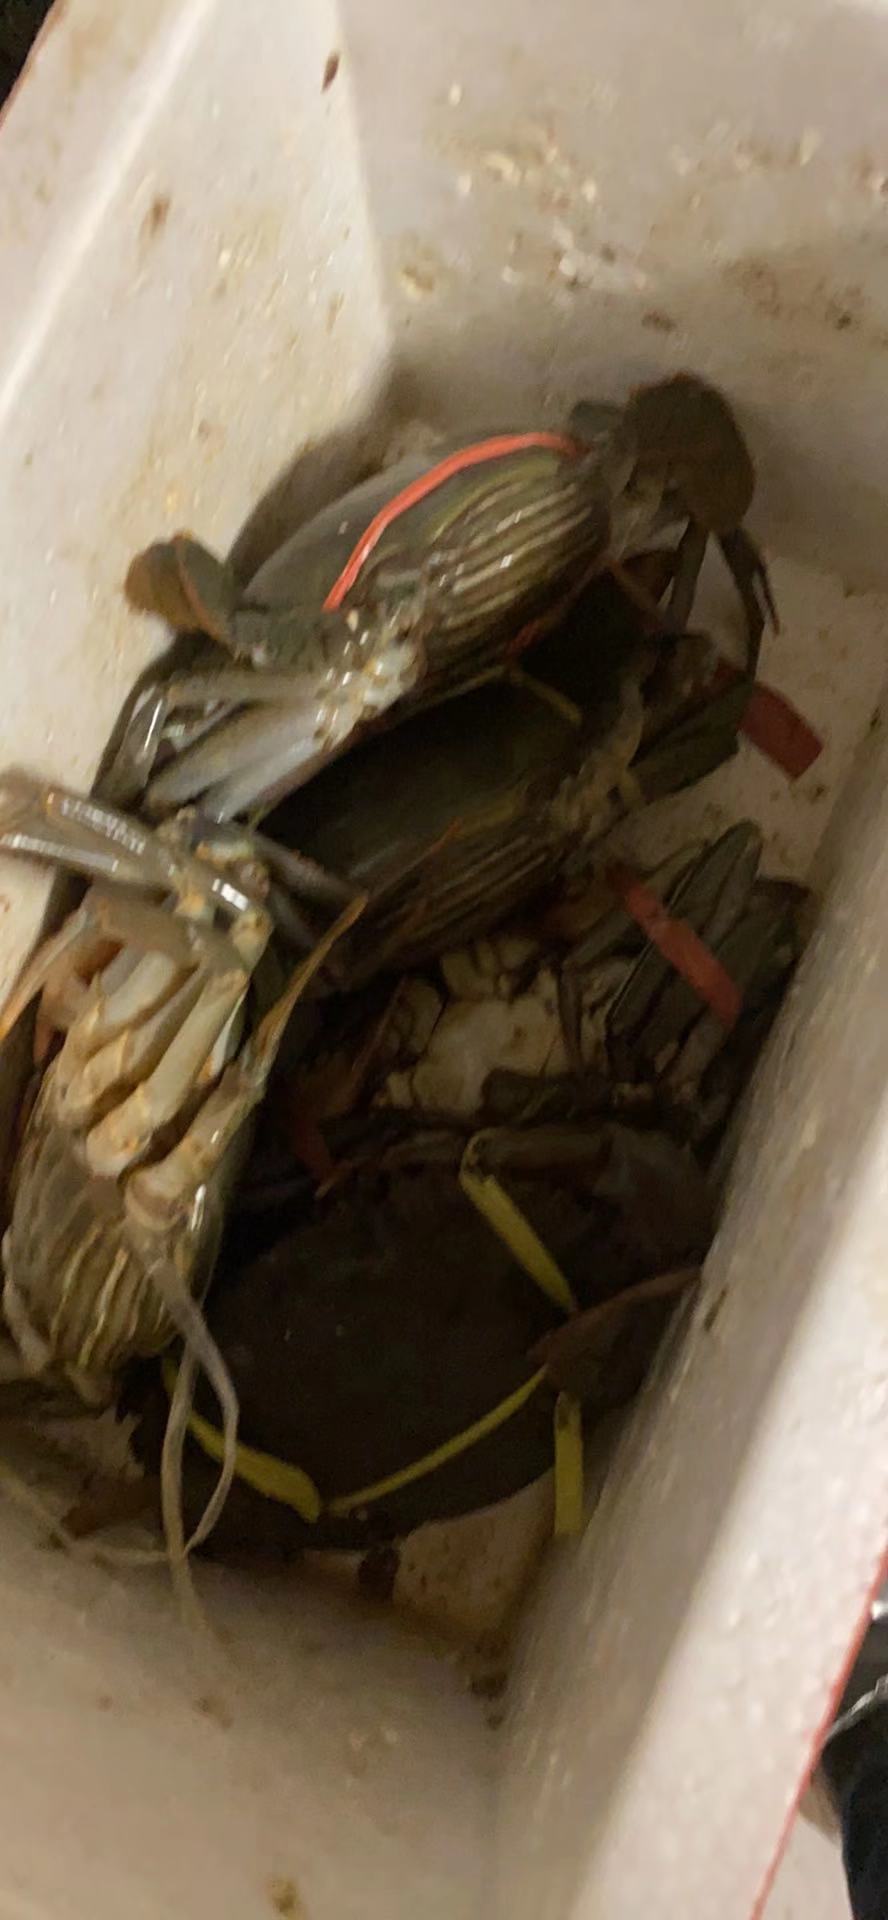 在京东购买螃蟹到货全死不提供售后服务要求赔付